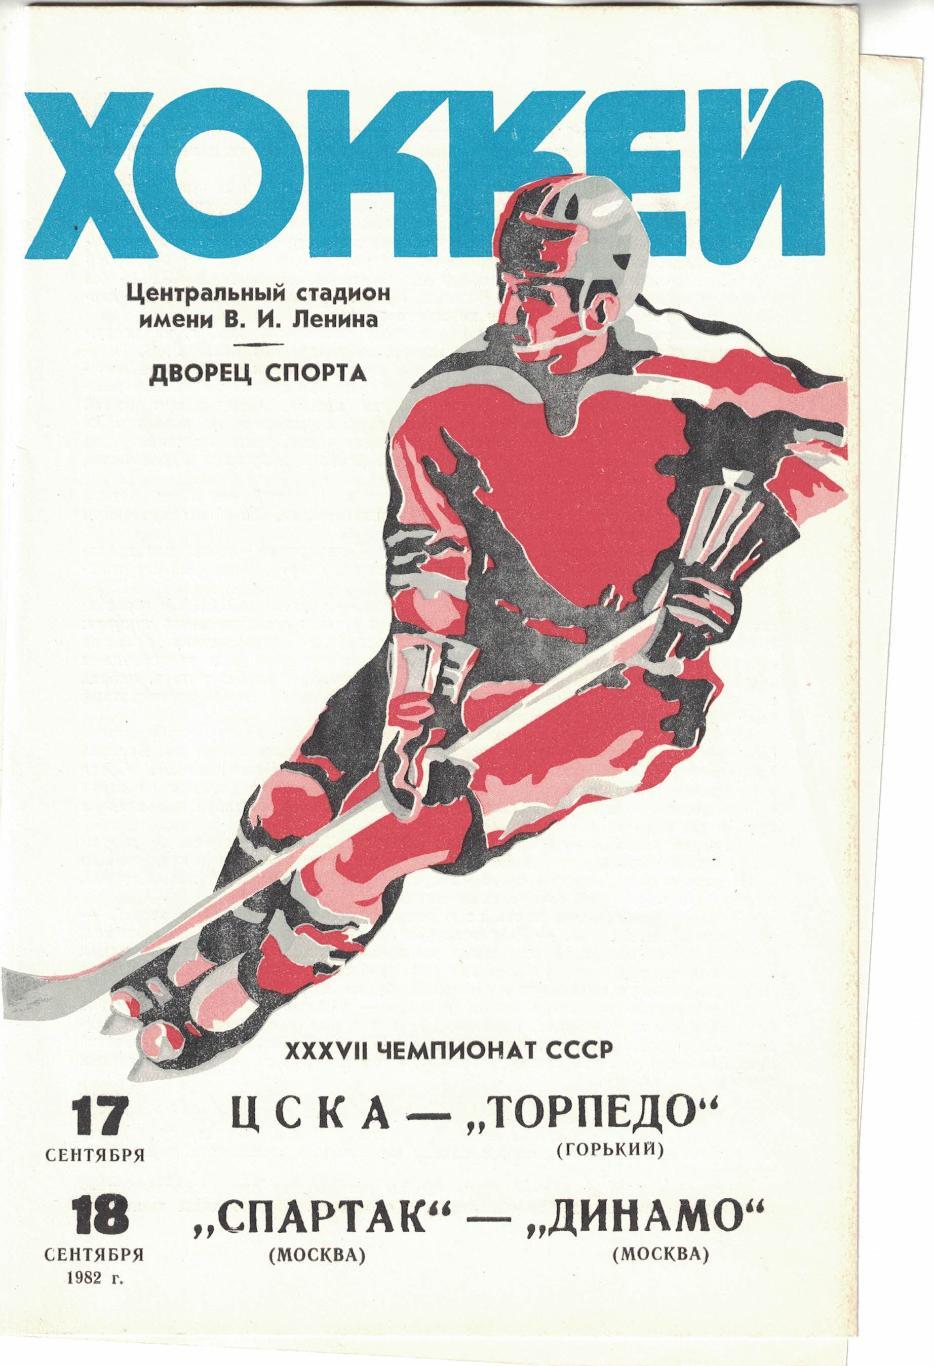 ЦСКА - Торпедо Горький, Спартак Москва - Динамо Москва 17 и 18.09.1982